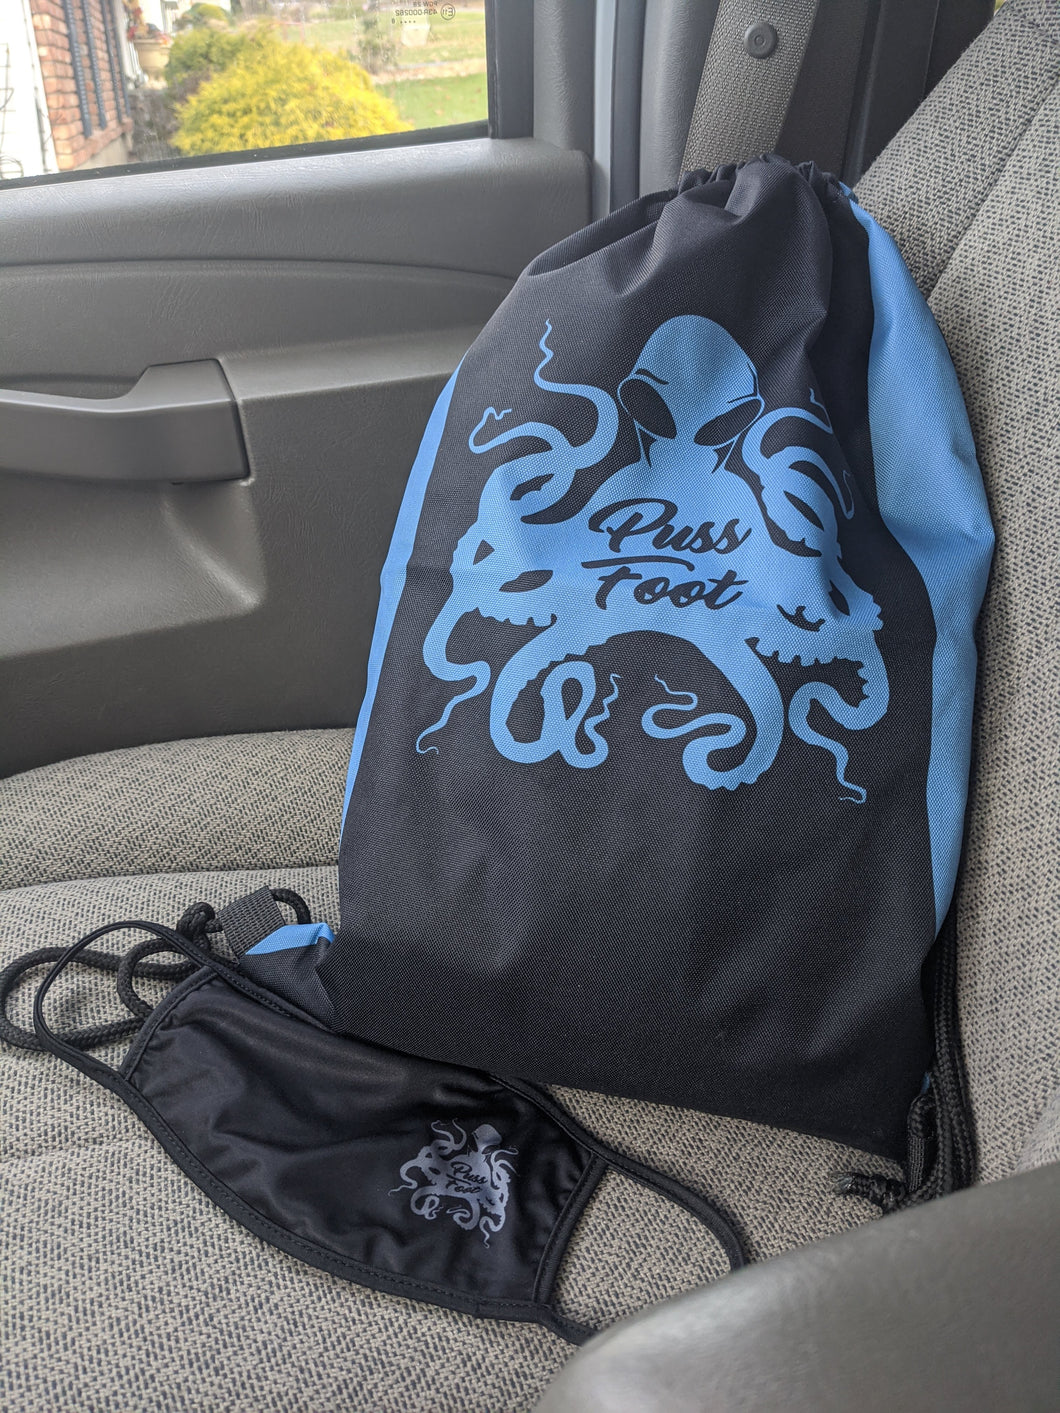 PussFootOG - Drawstring bag